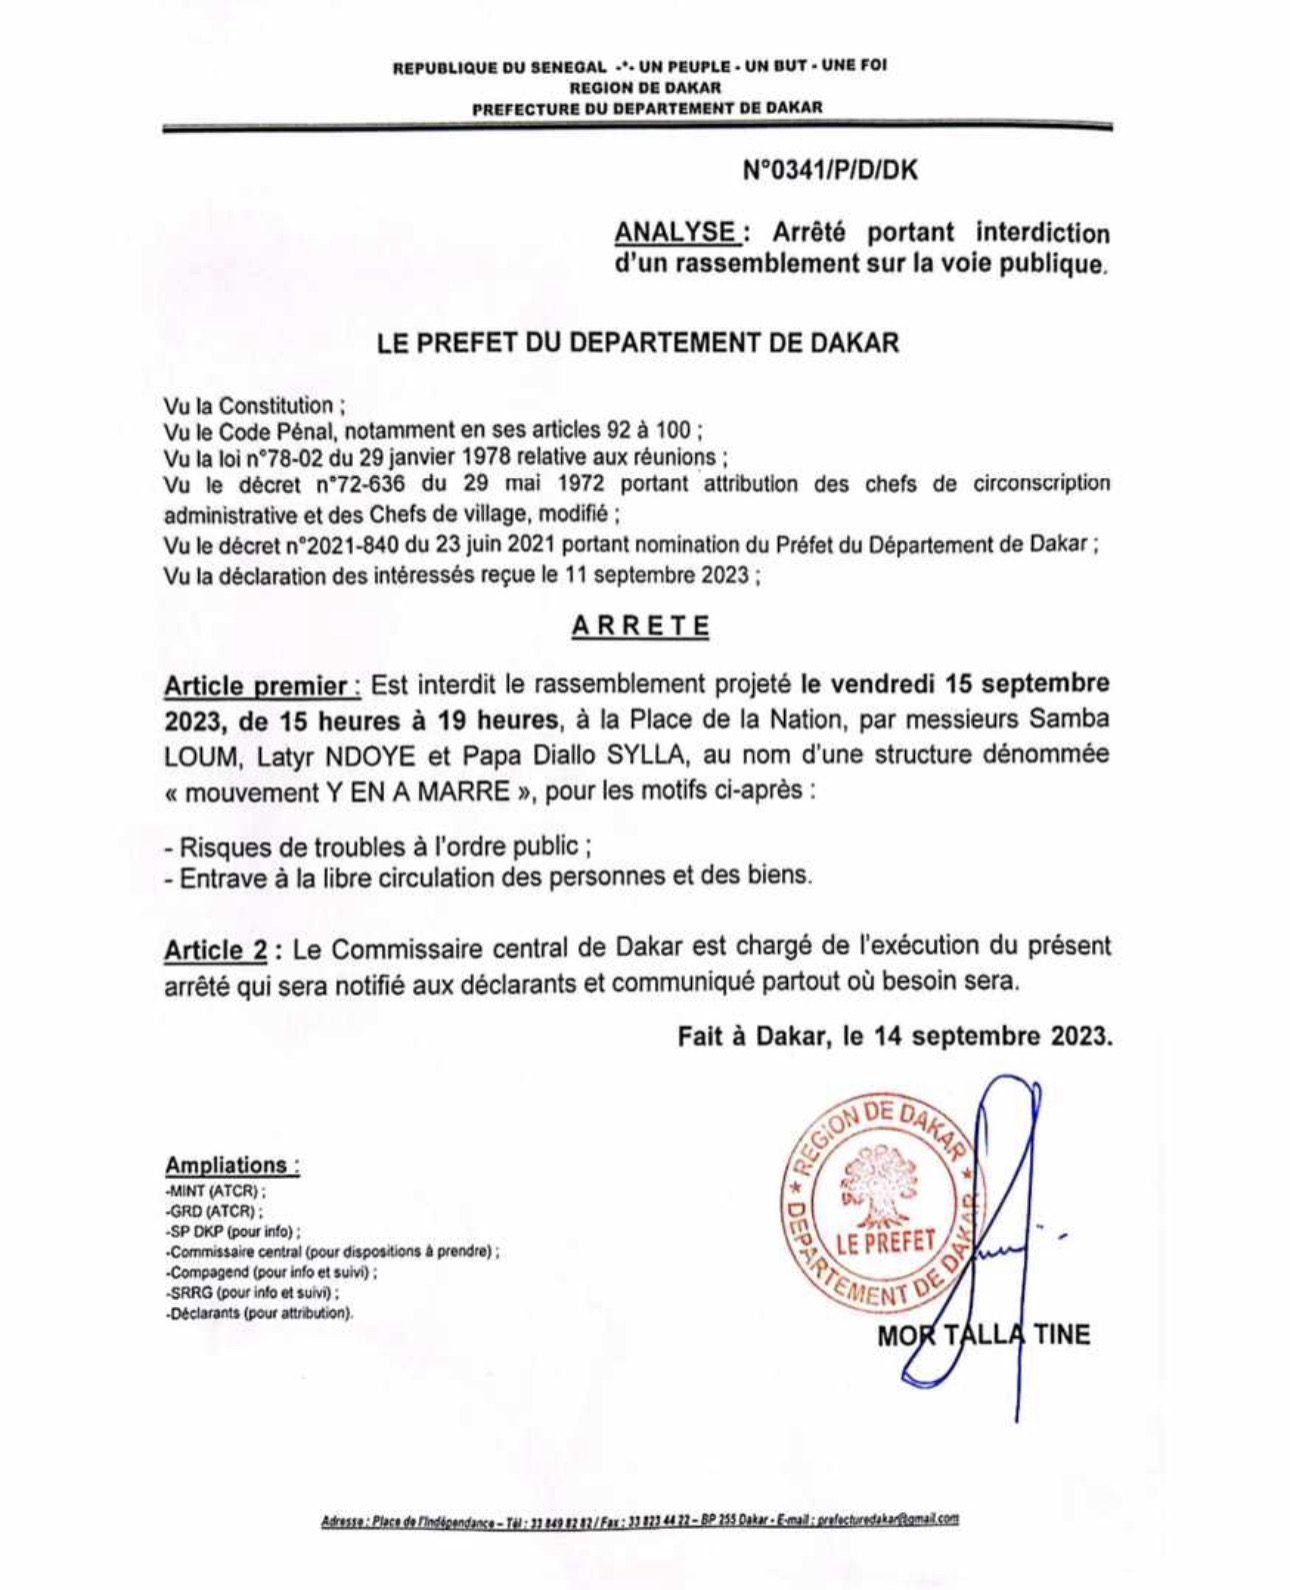 Le préfet de Dakar interdit le rassemblement de l’opposition prévu  ce vendredi 15 septembre 2023